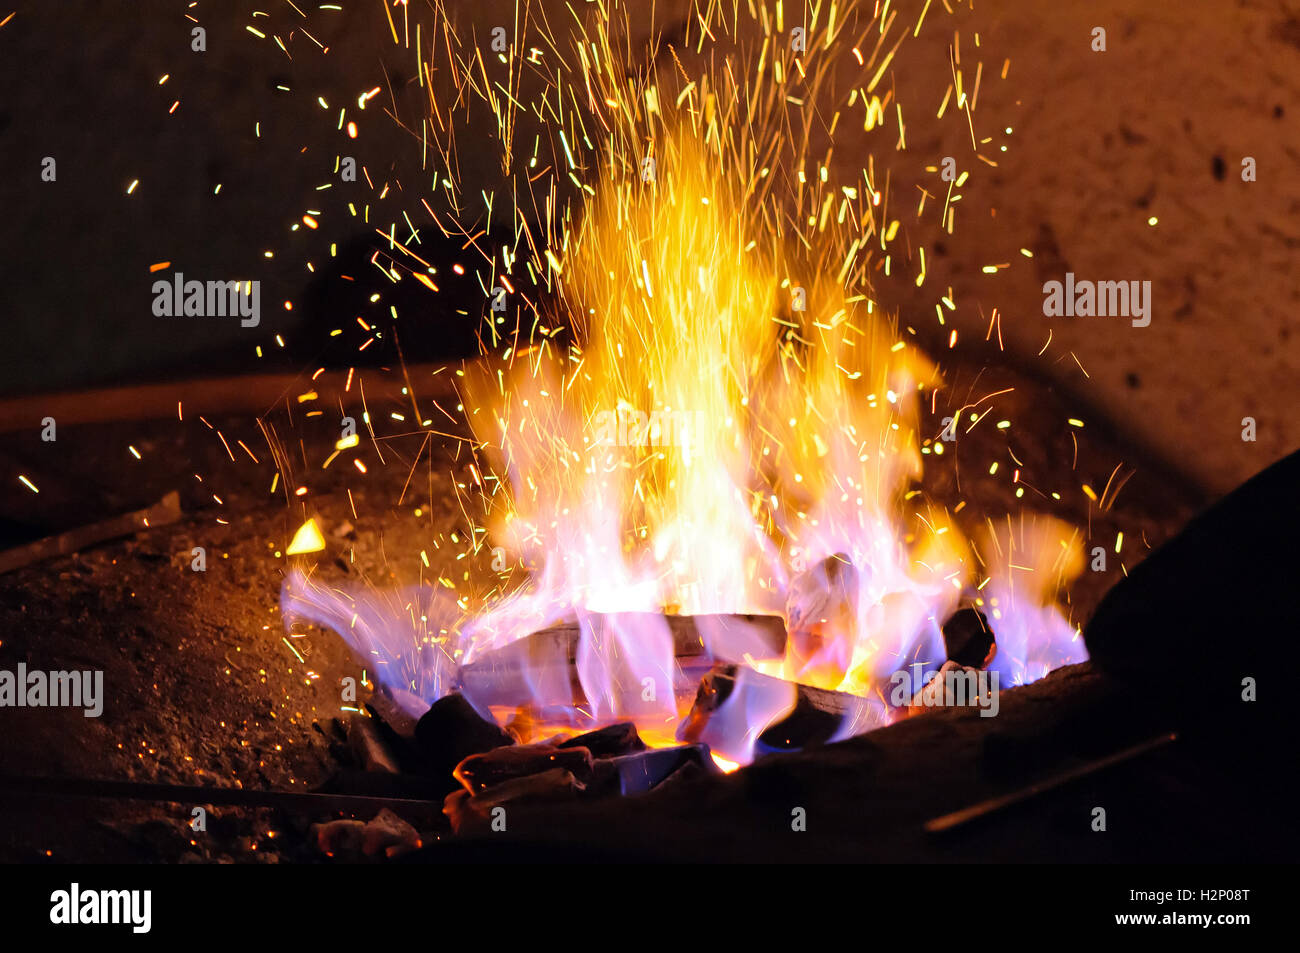 Chispas Del Fuego De Las Bengalas Foto de archivo - Imagen de caliente,  navidad: 51446540